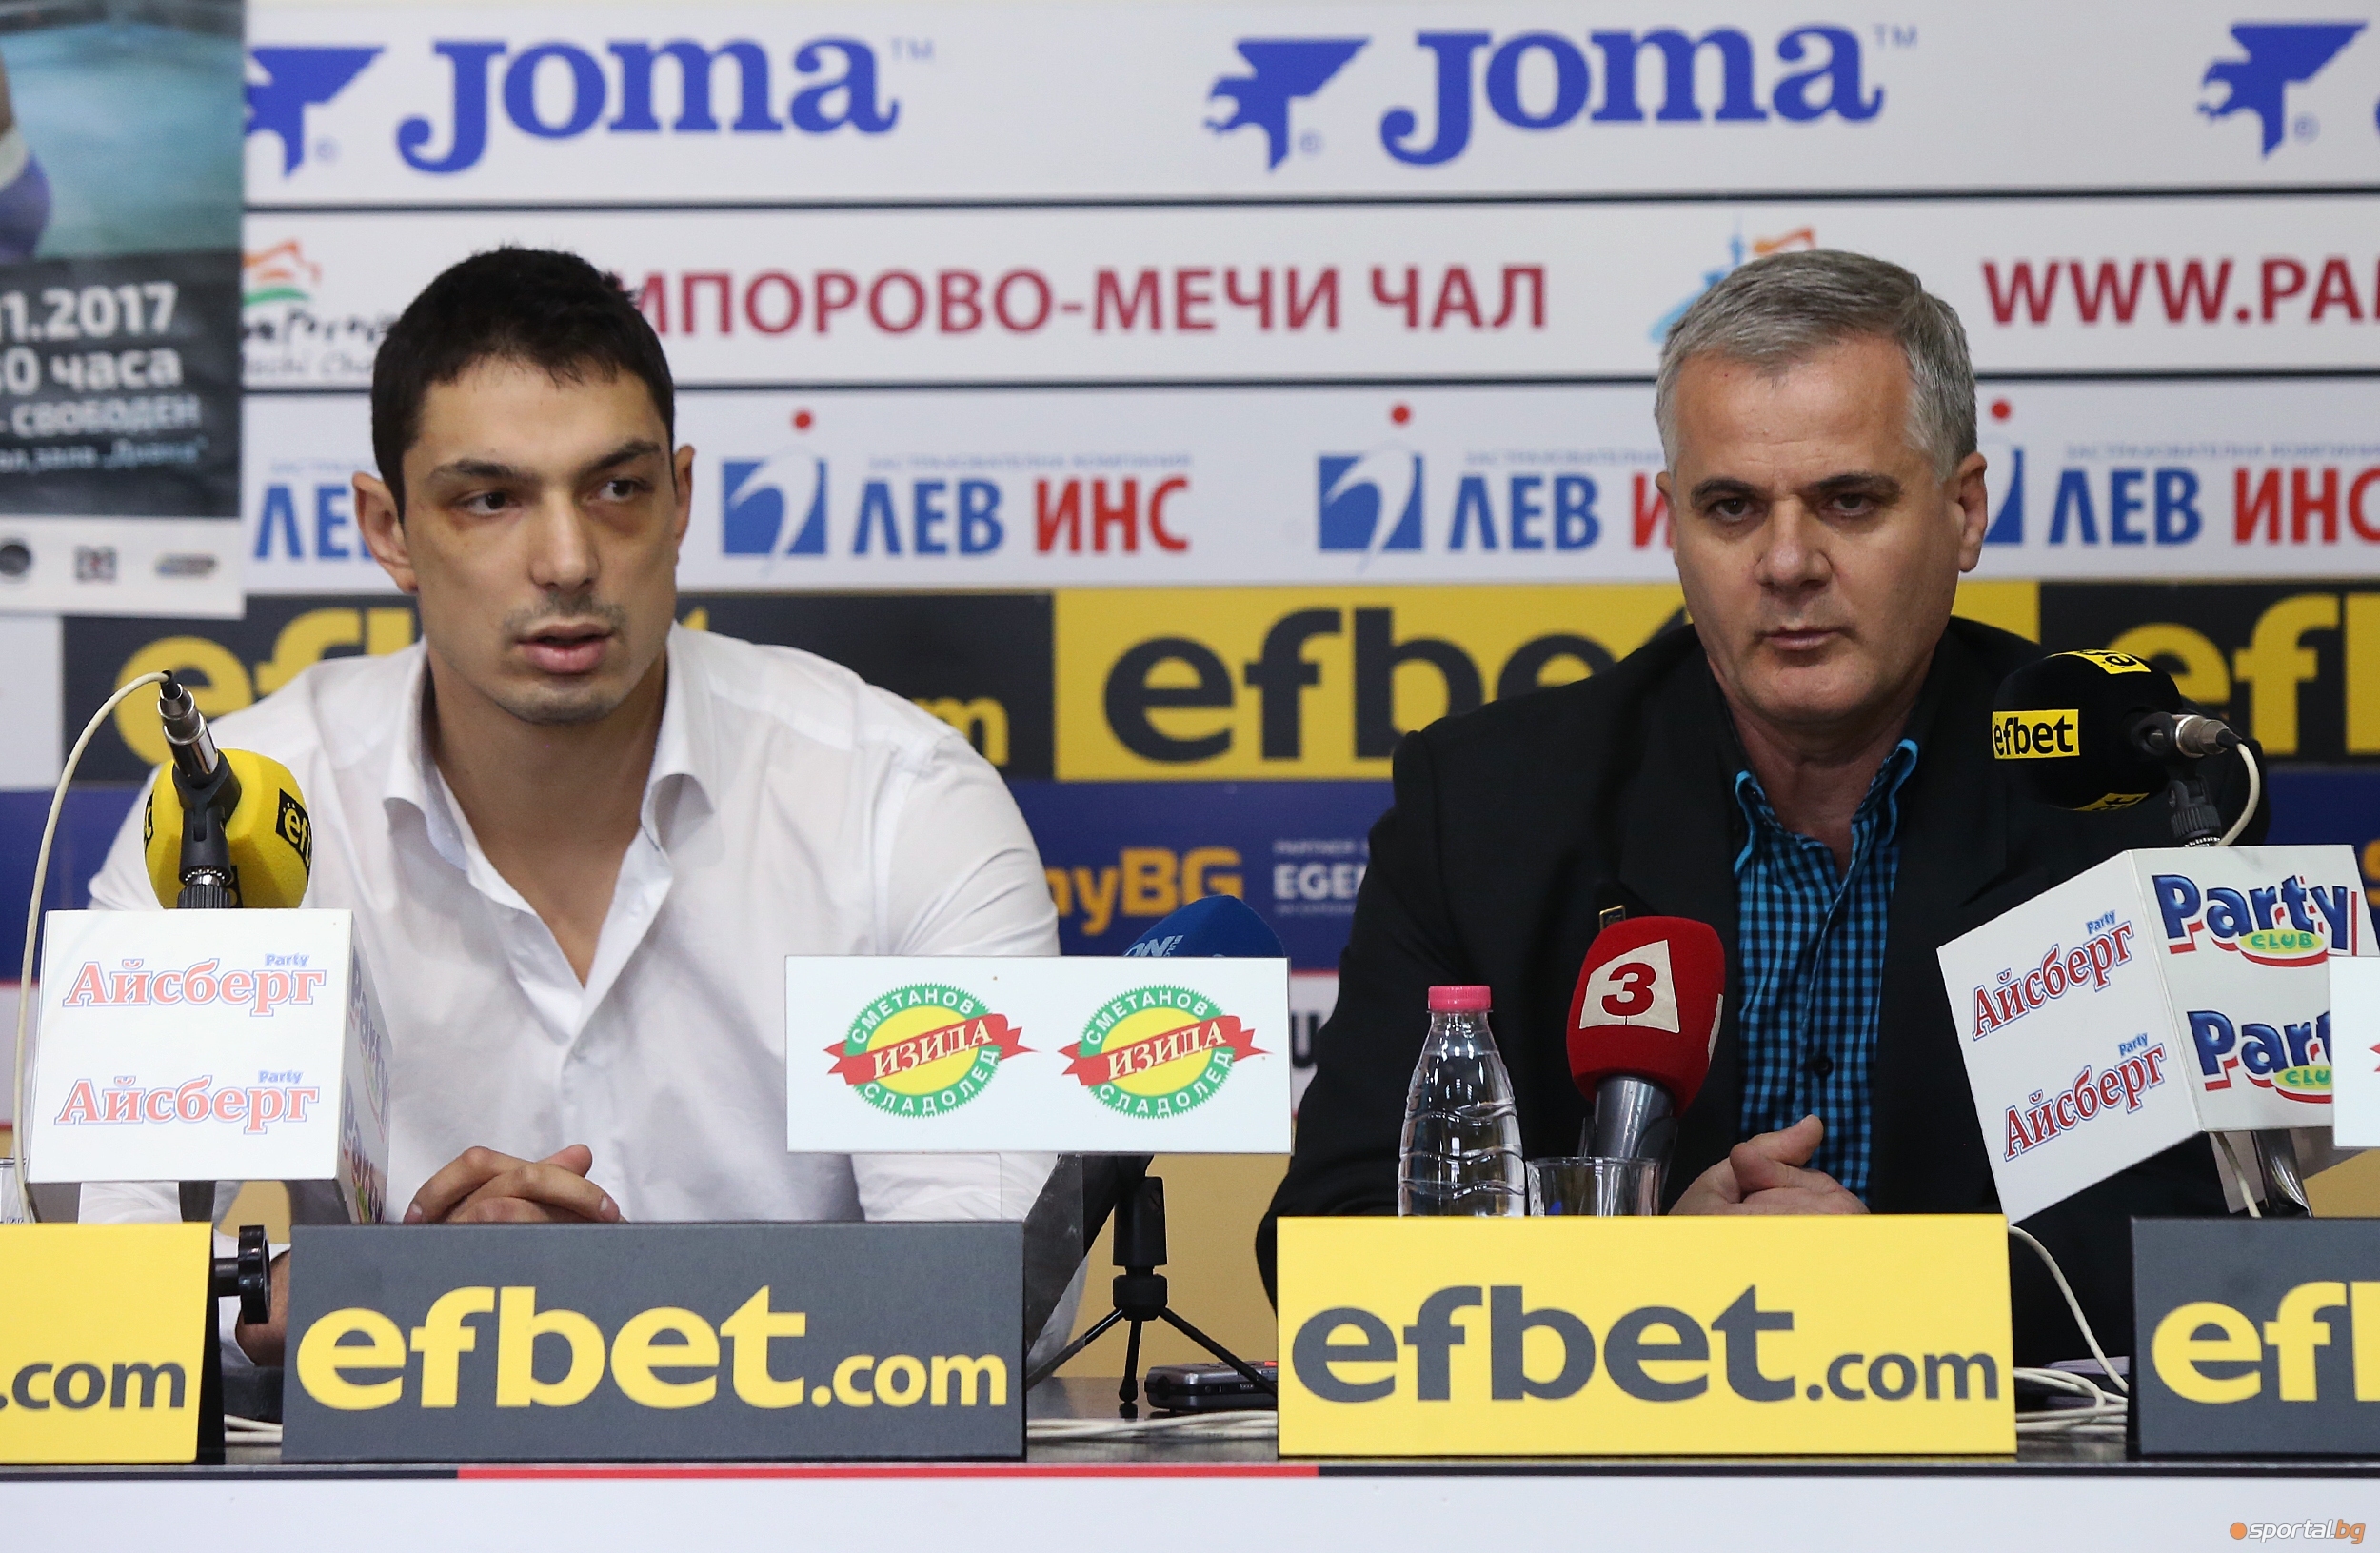 Българската федерация по бокс обяви безплатен вход за финалния кръг